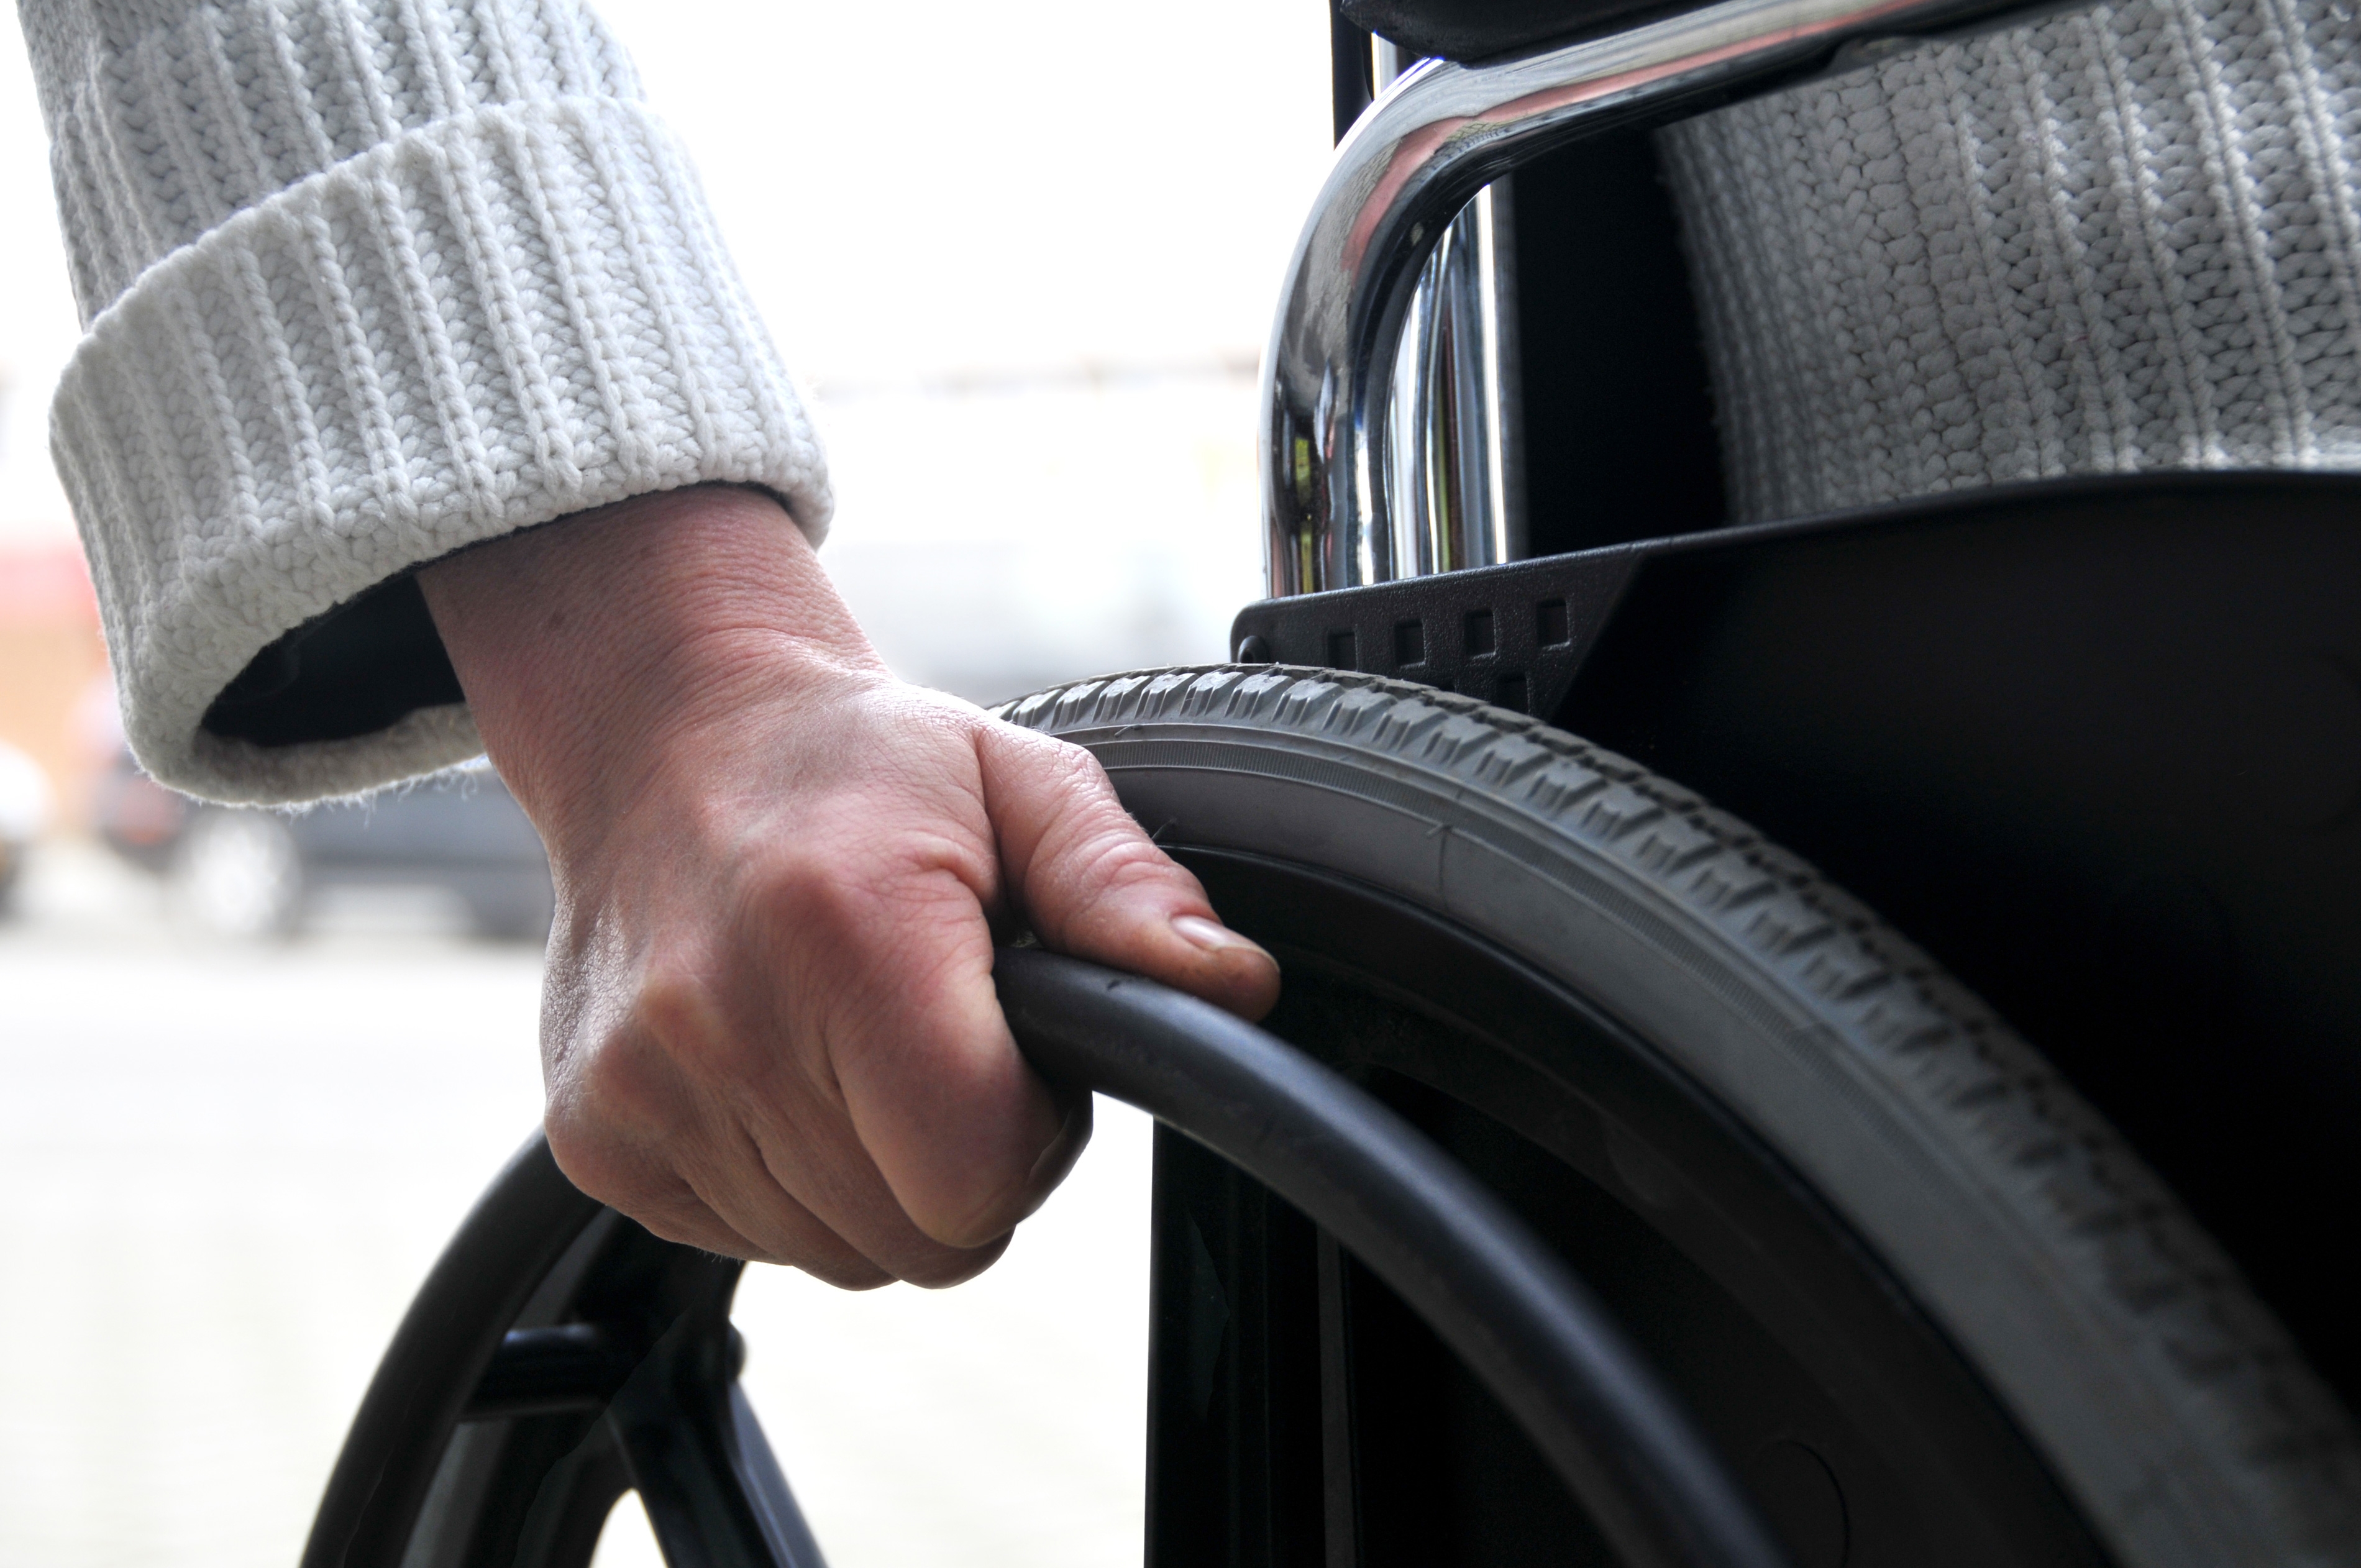 Atendimento deve ser prioritário para pessoas com deficiência e mobilidade reduzida